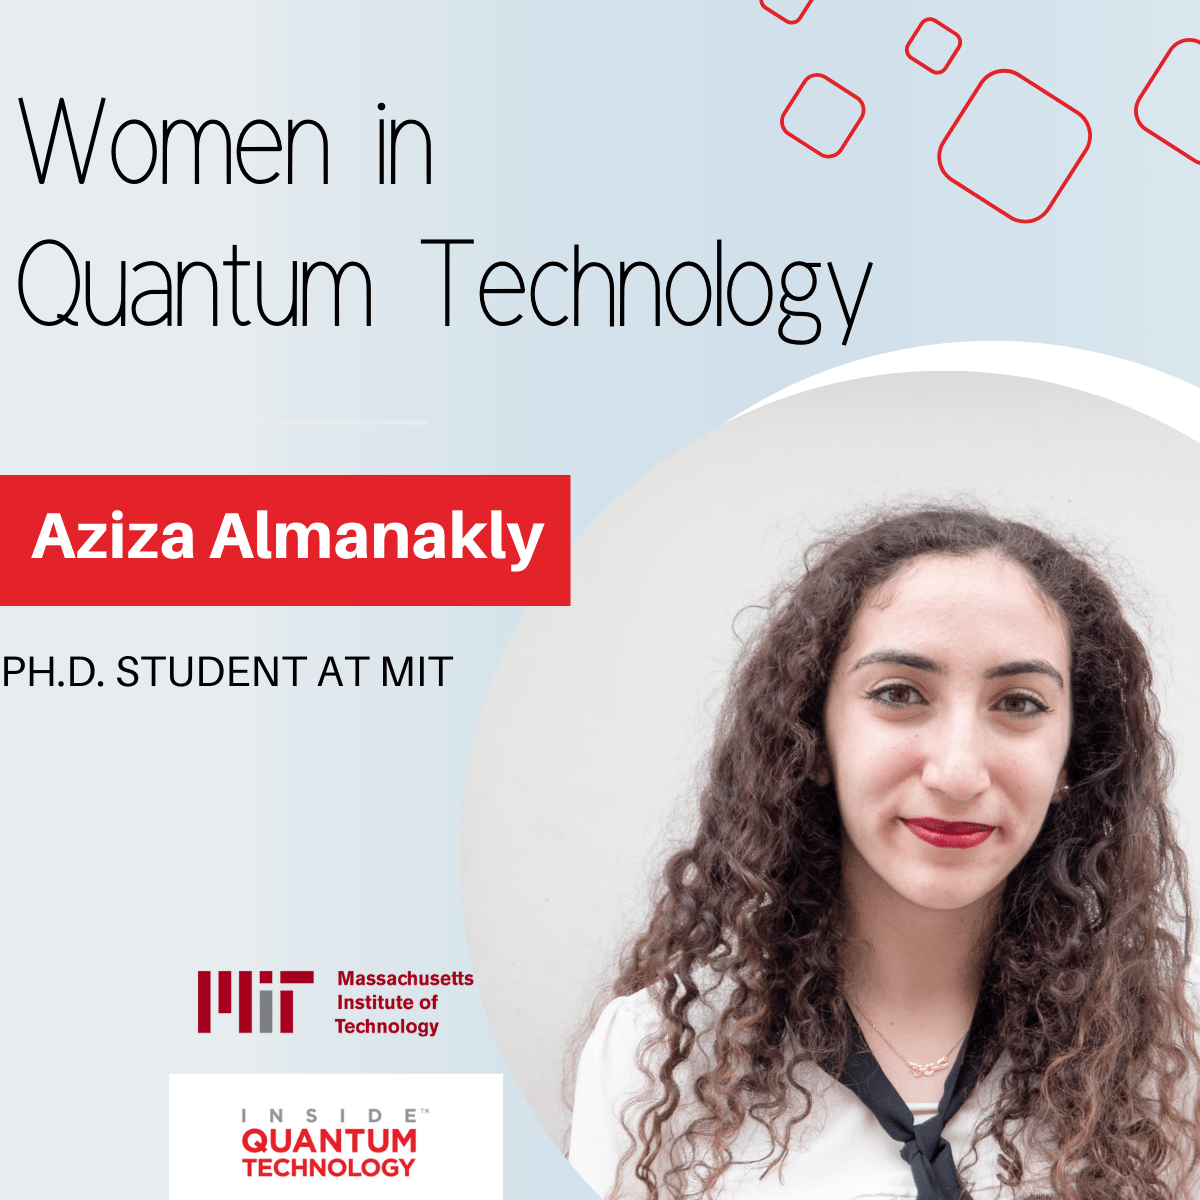 Aziza Almanakly, estudiante de posgrado del MIT, habla sobre su educación e investigación en computación cuántica y fotónica.